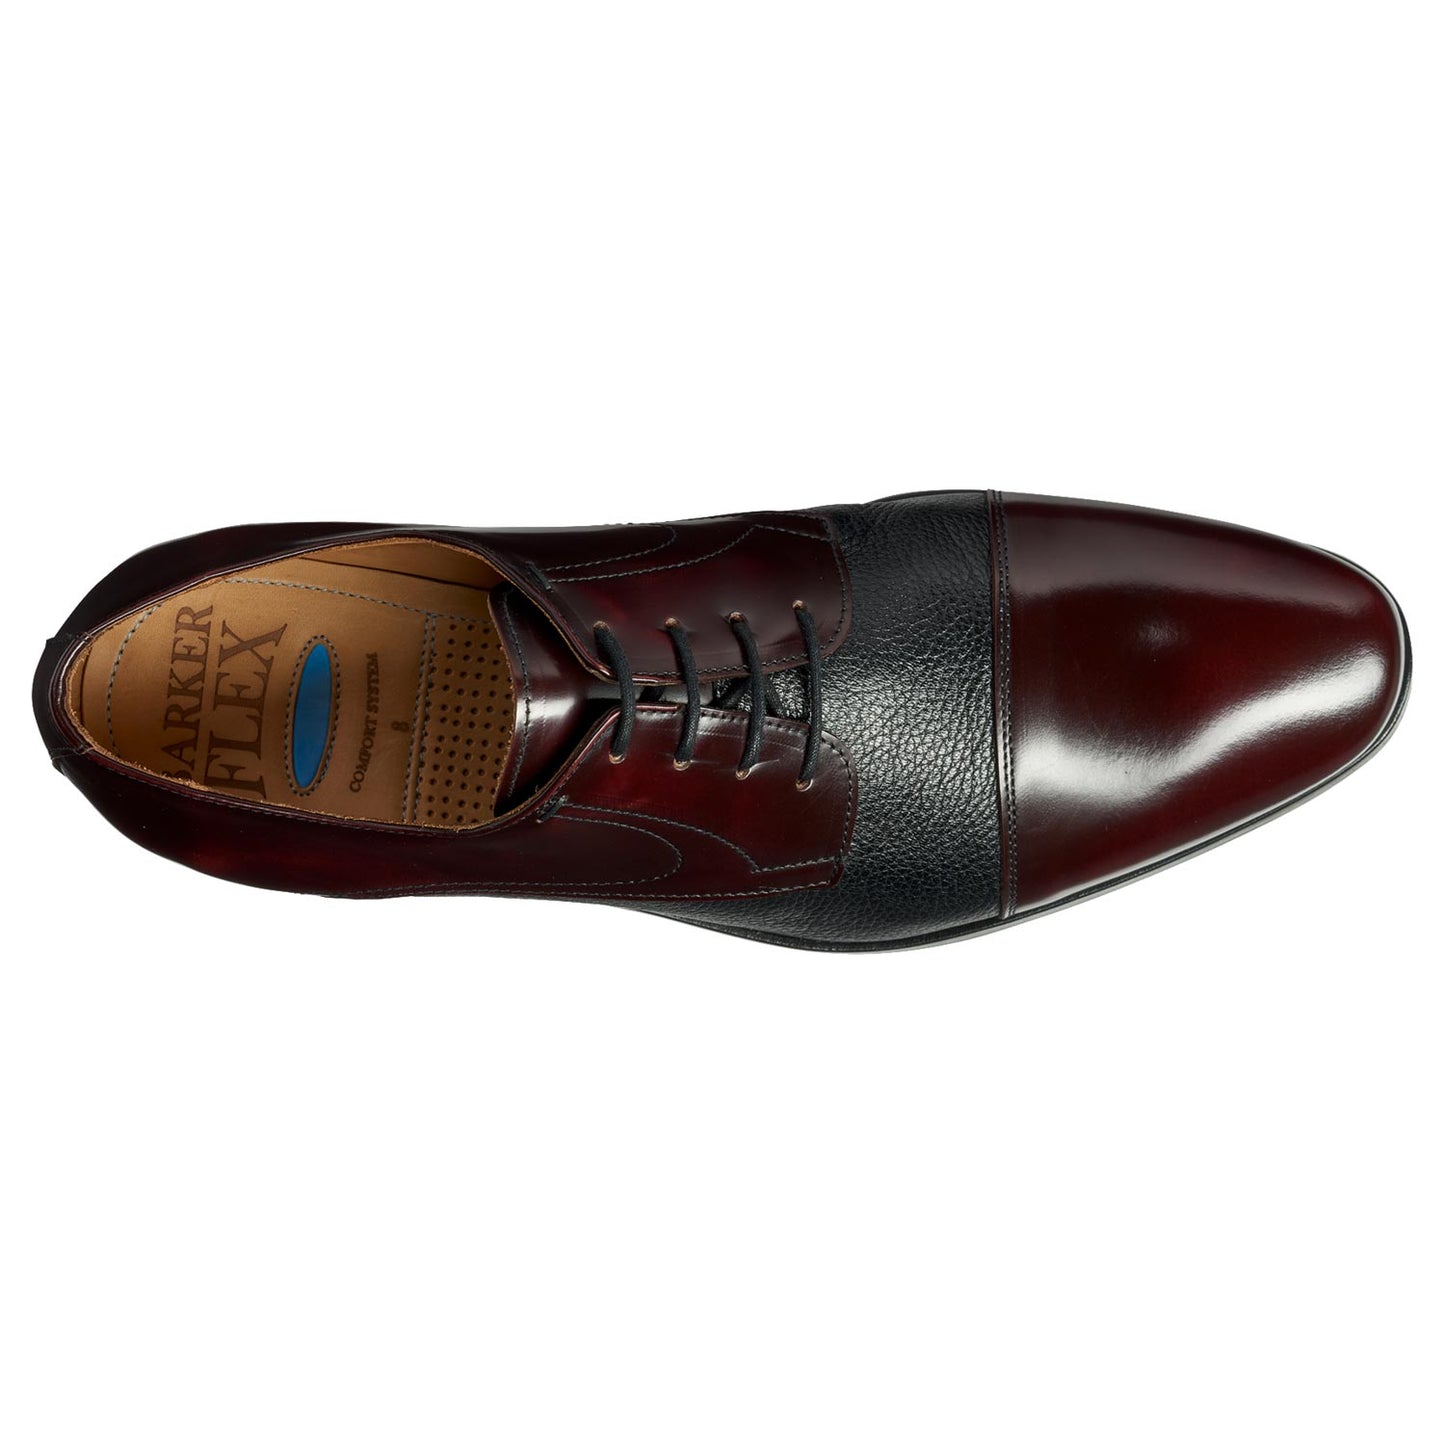 Barker Southwold Burgundy Calf / Deerskin Formal Shoes